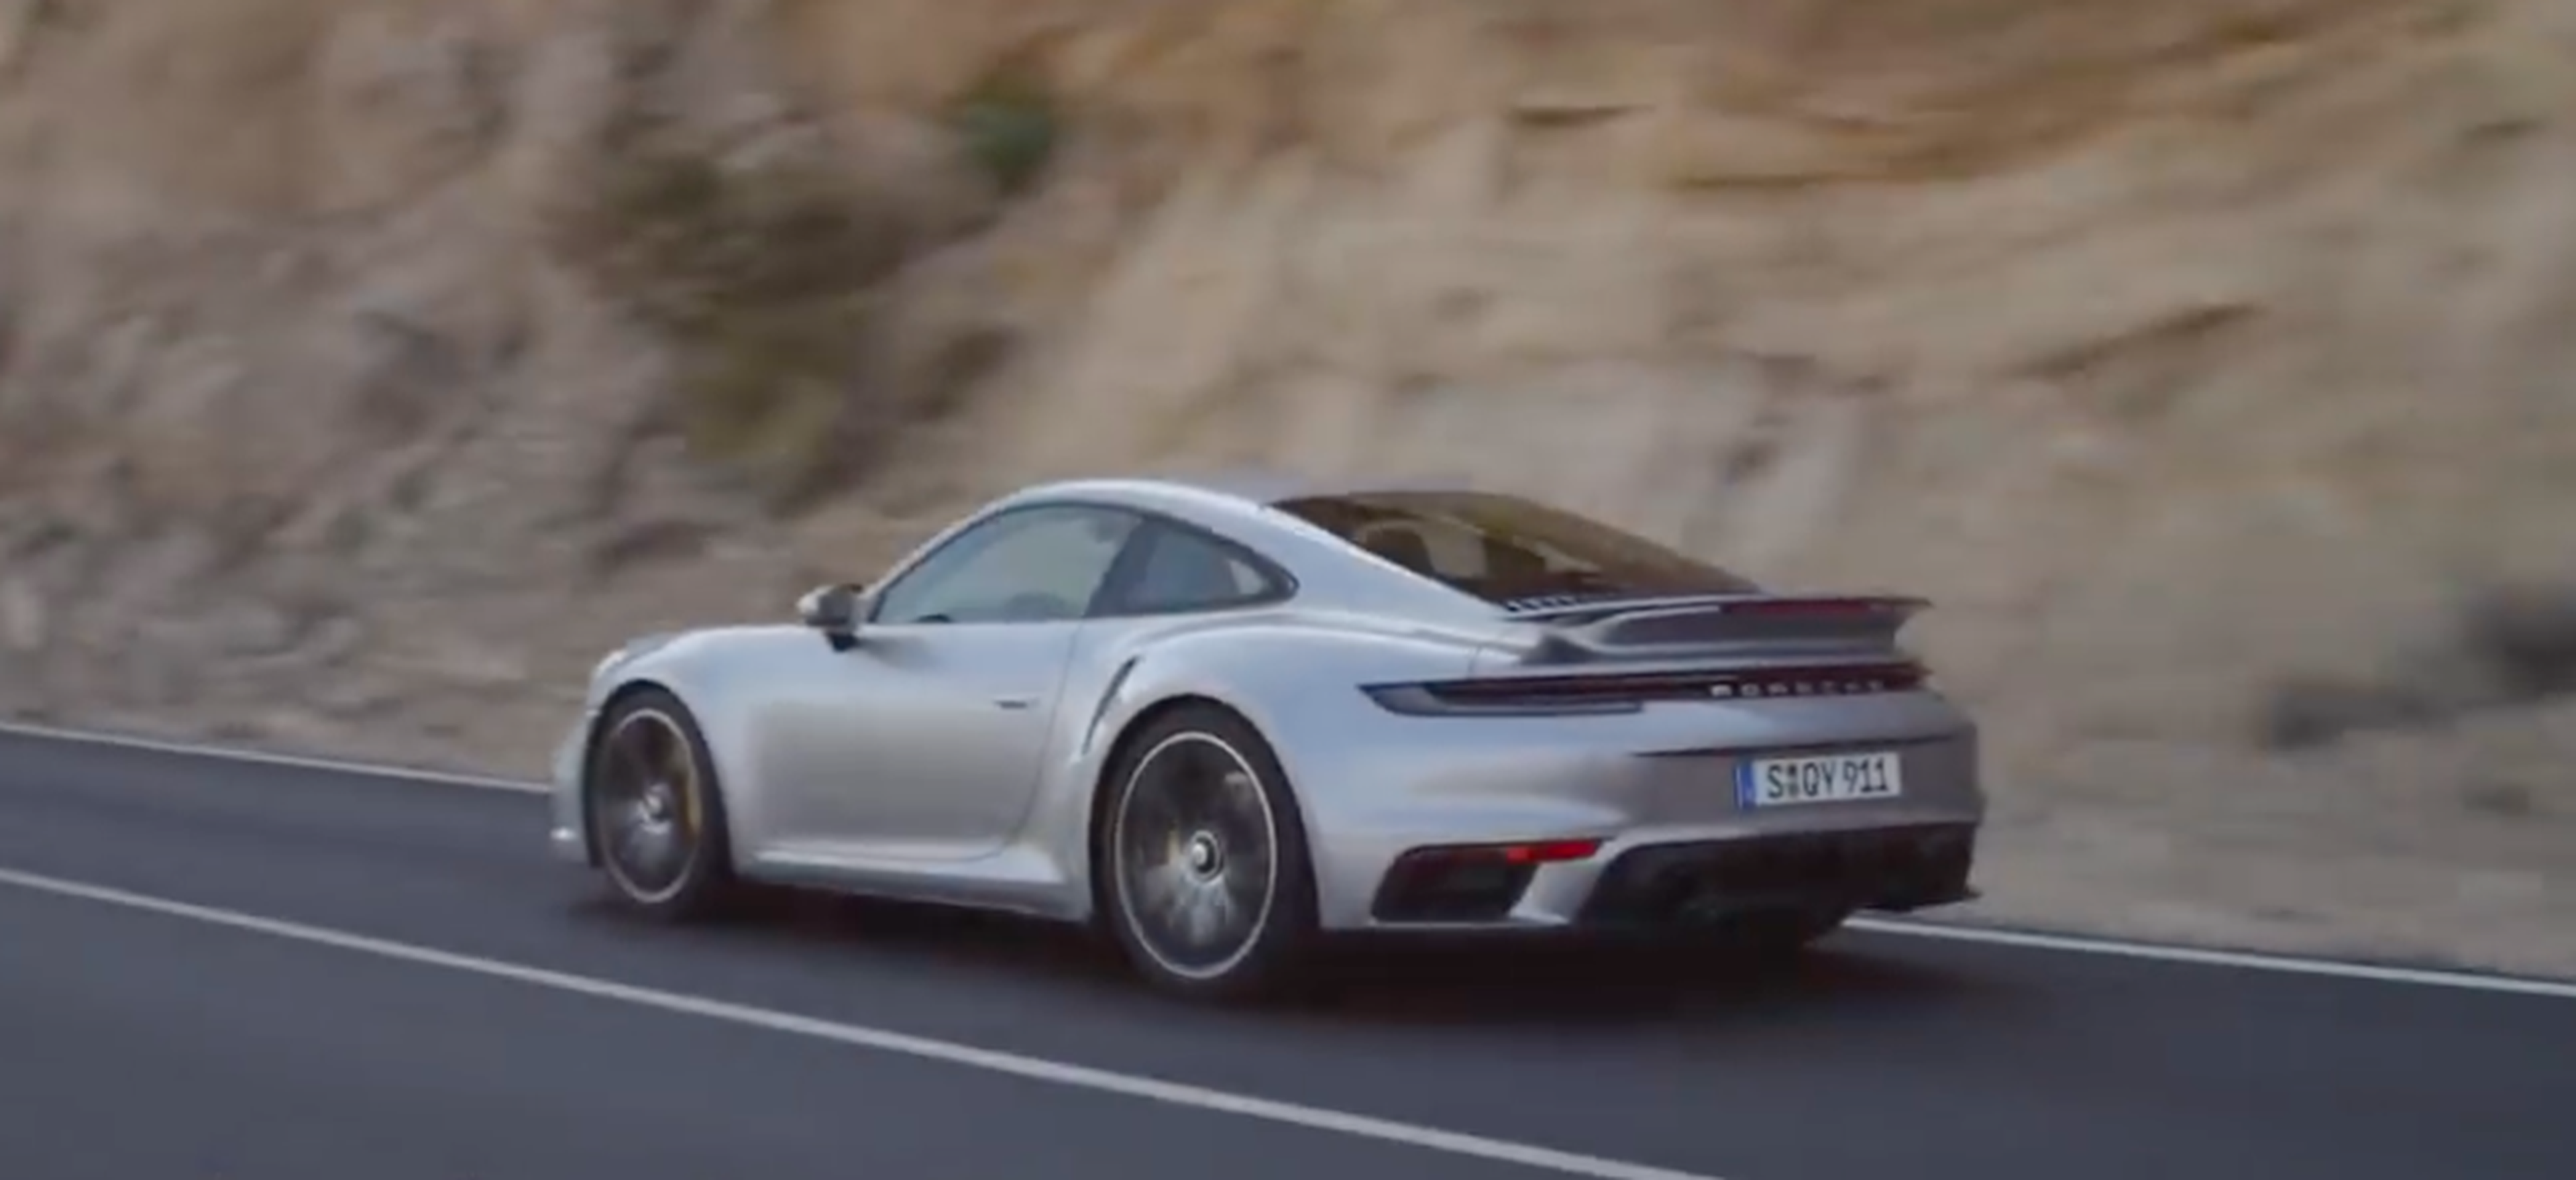 VÍDEO: Porsche 911 Turbo S 2020, así es cómo funciona su aerodinámica activa, ¡prodigioso!